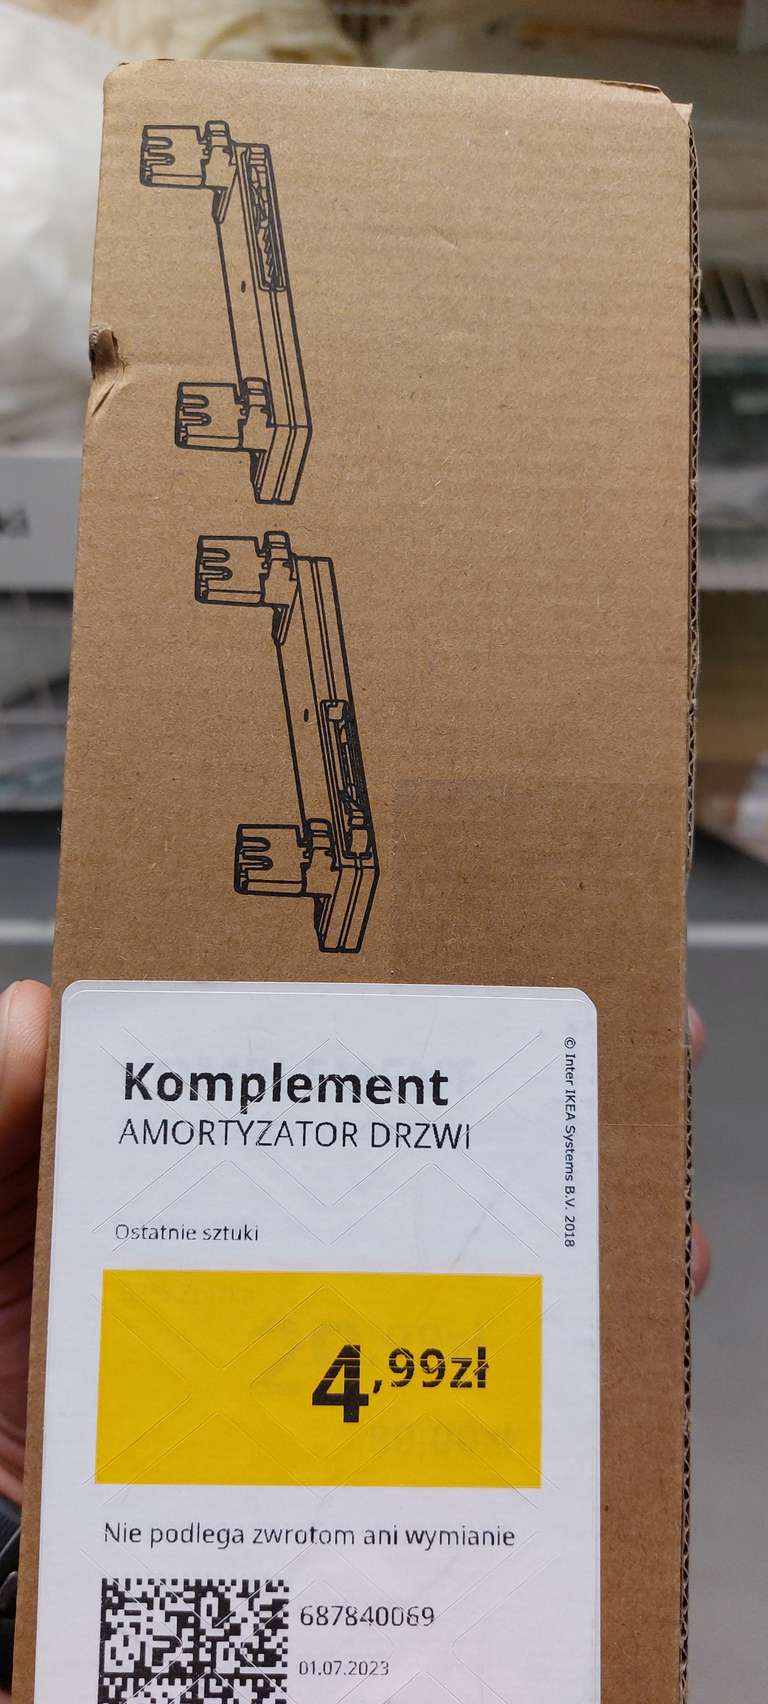 Ikea amortyzator do drzwi przesuwnych komplement